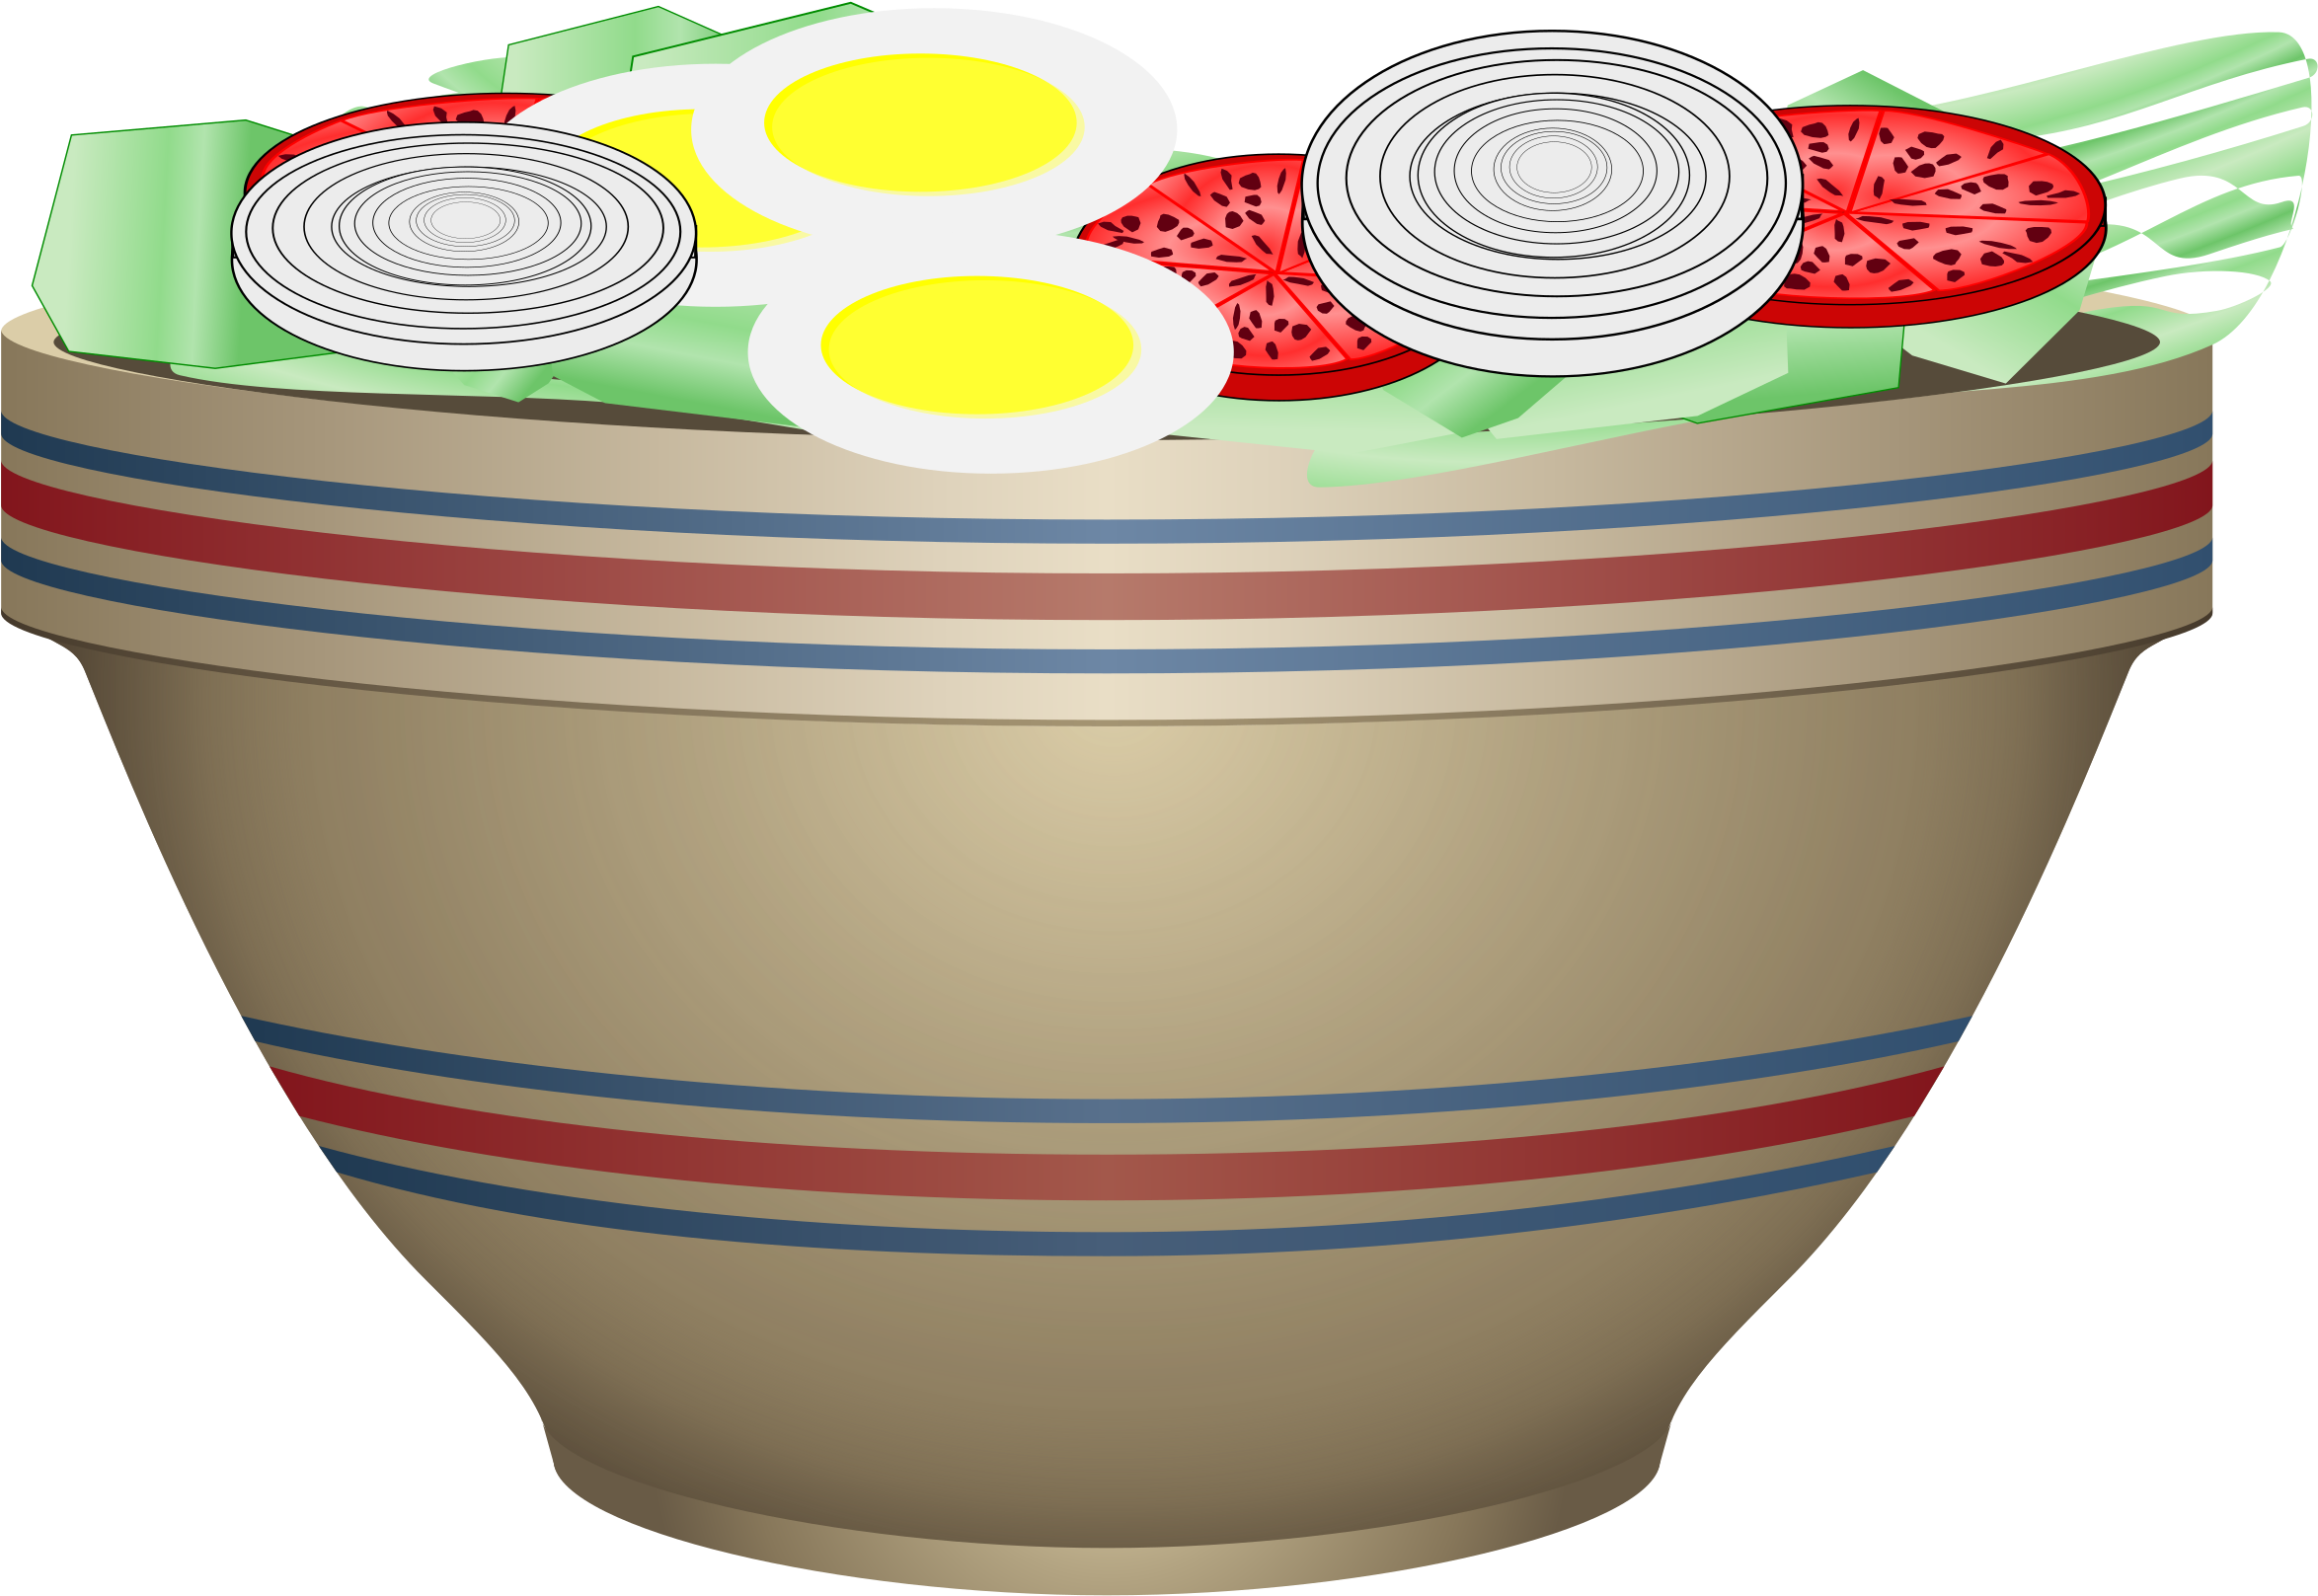 Big Image - Clipart Bowl Of Salad (2400x2400)